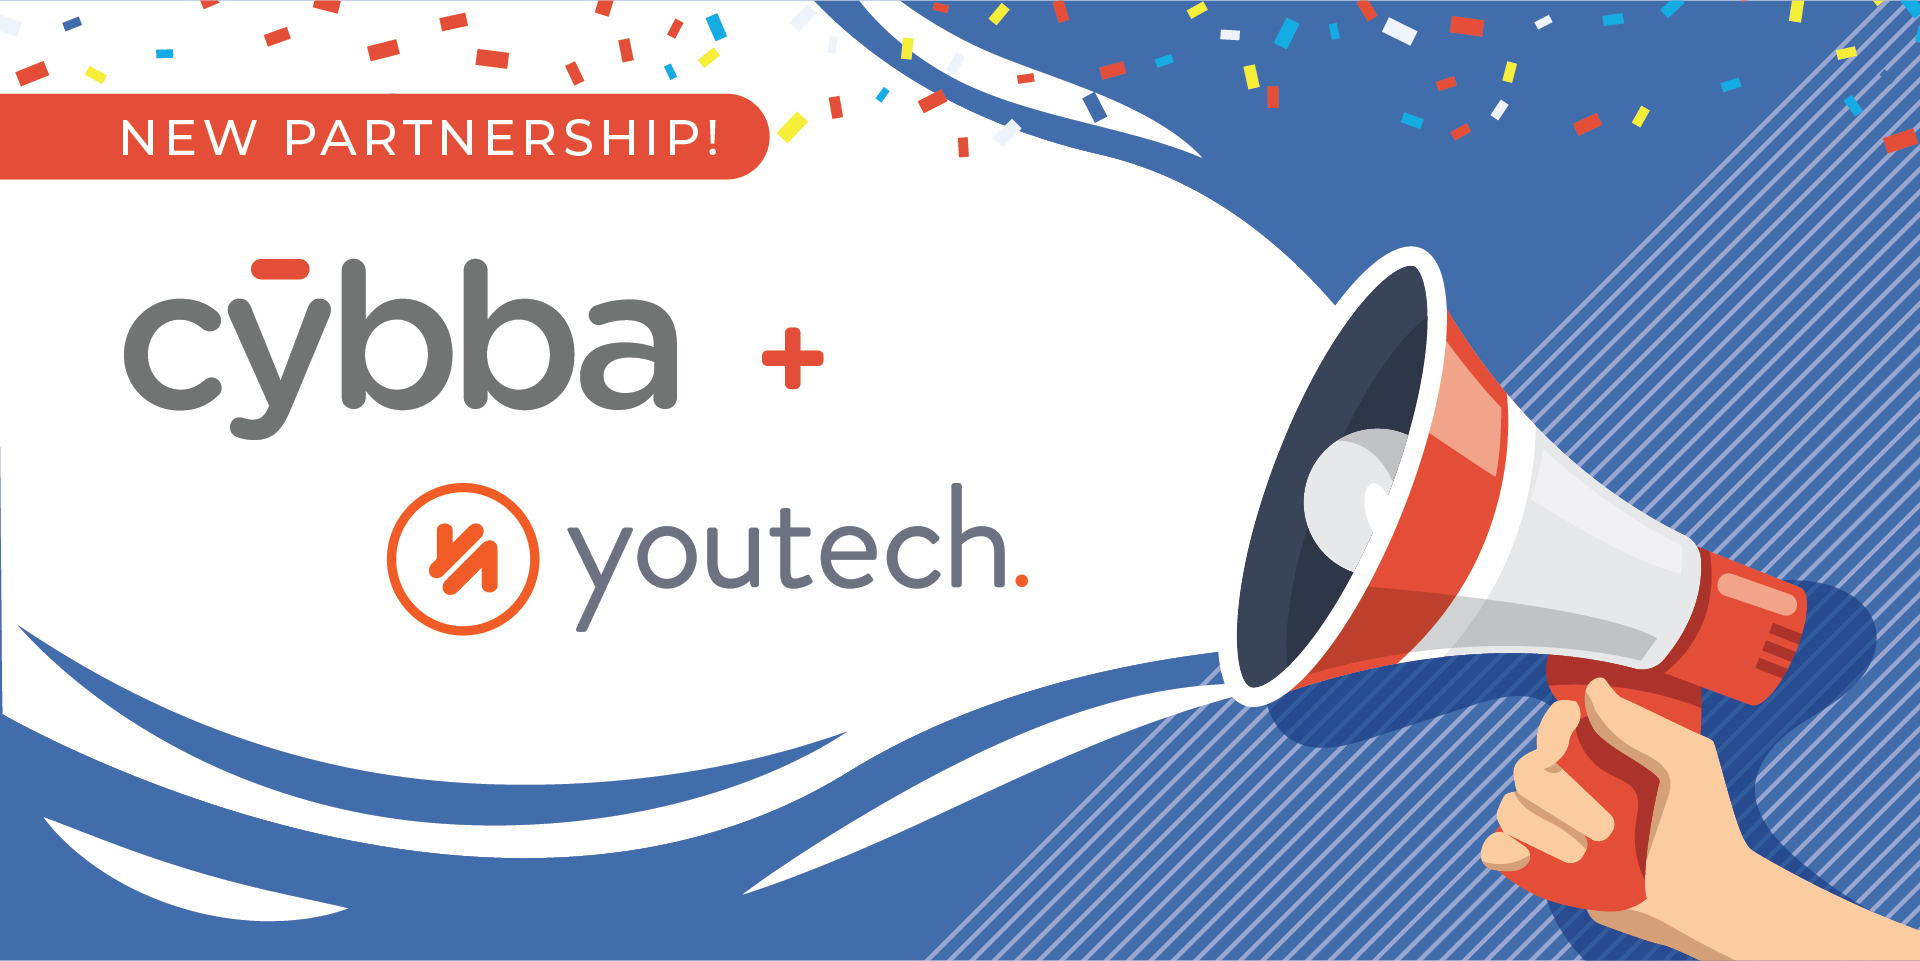 cybba youtech partnership